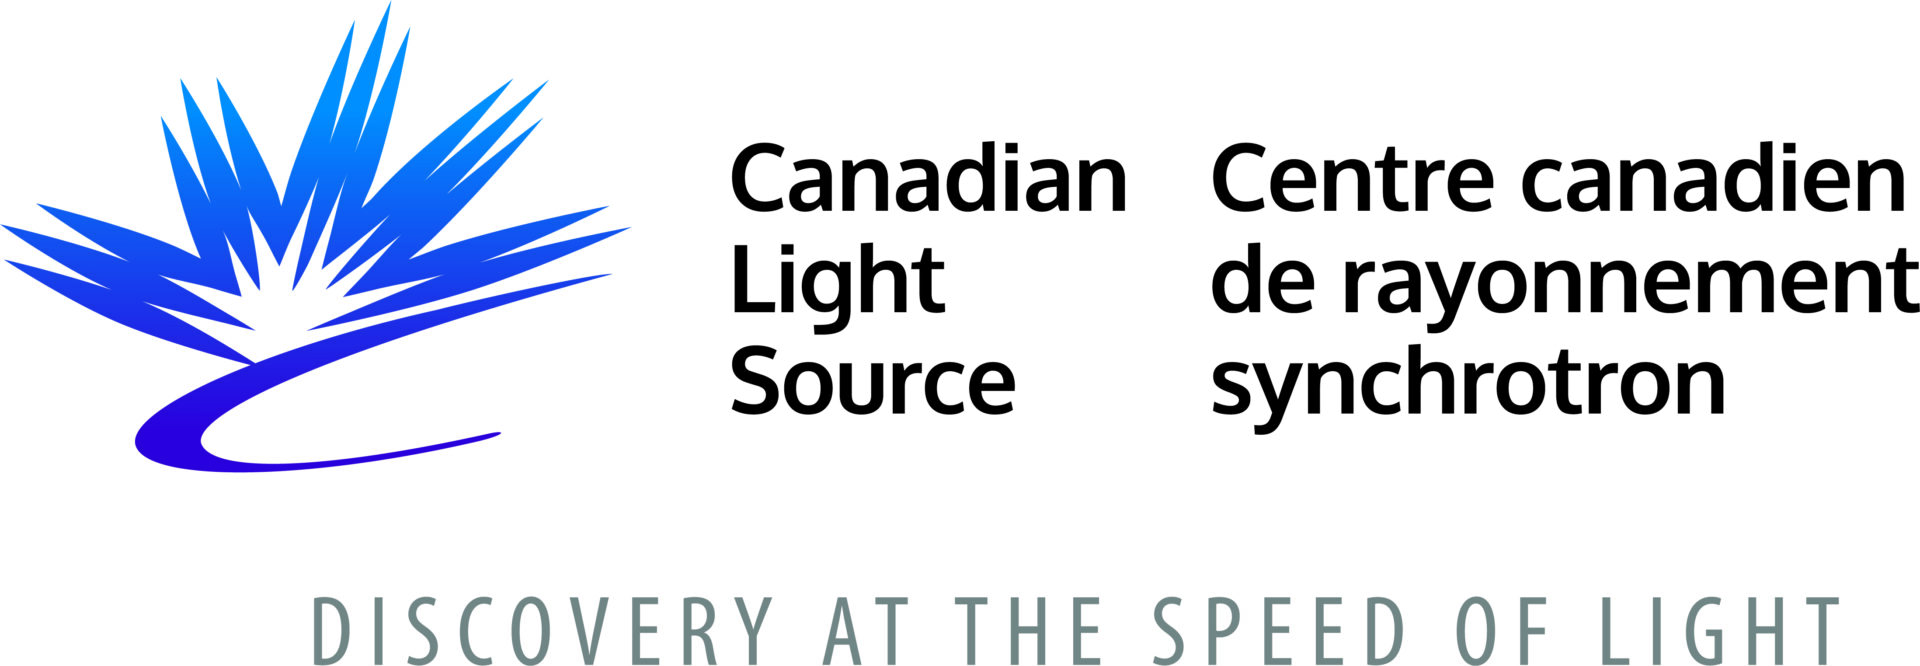 Logotipo da fonte de luz canadense